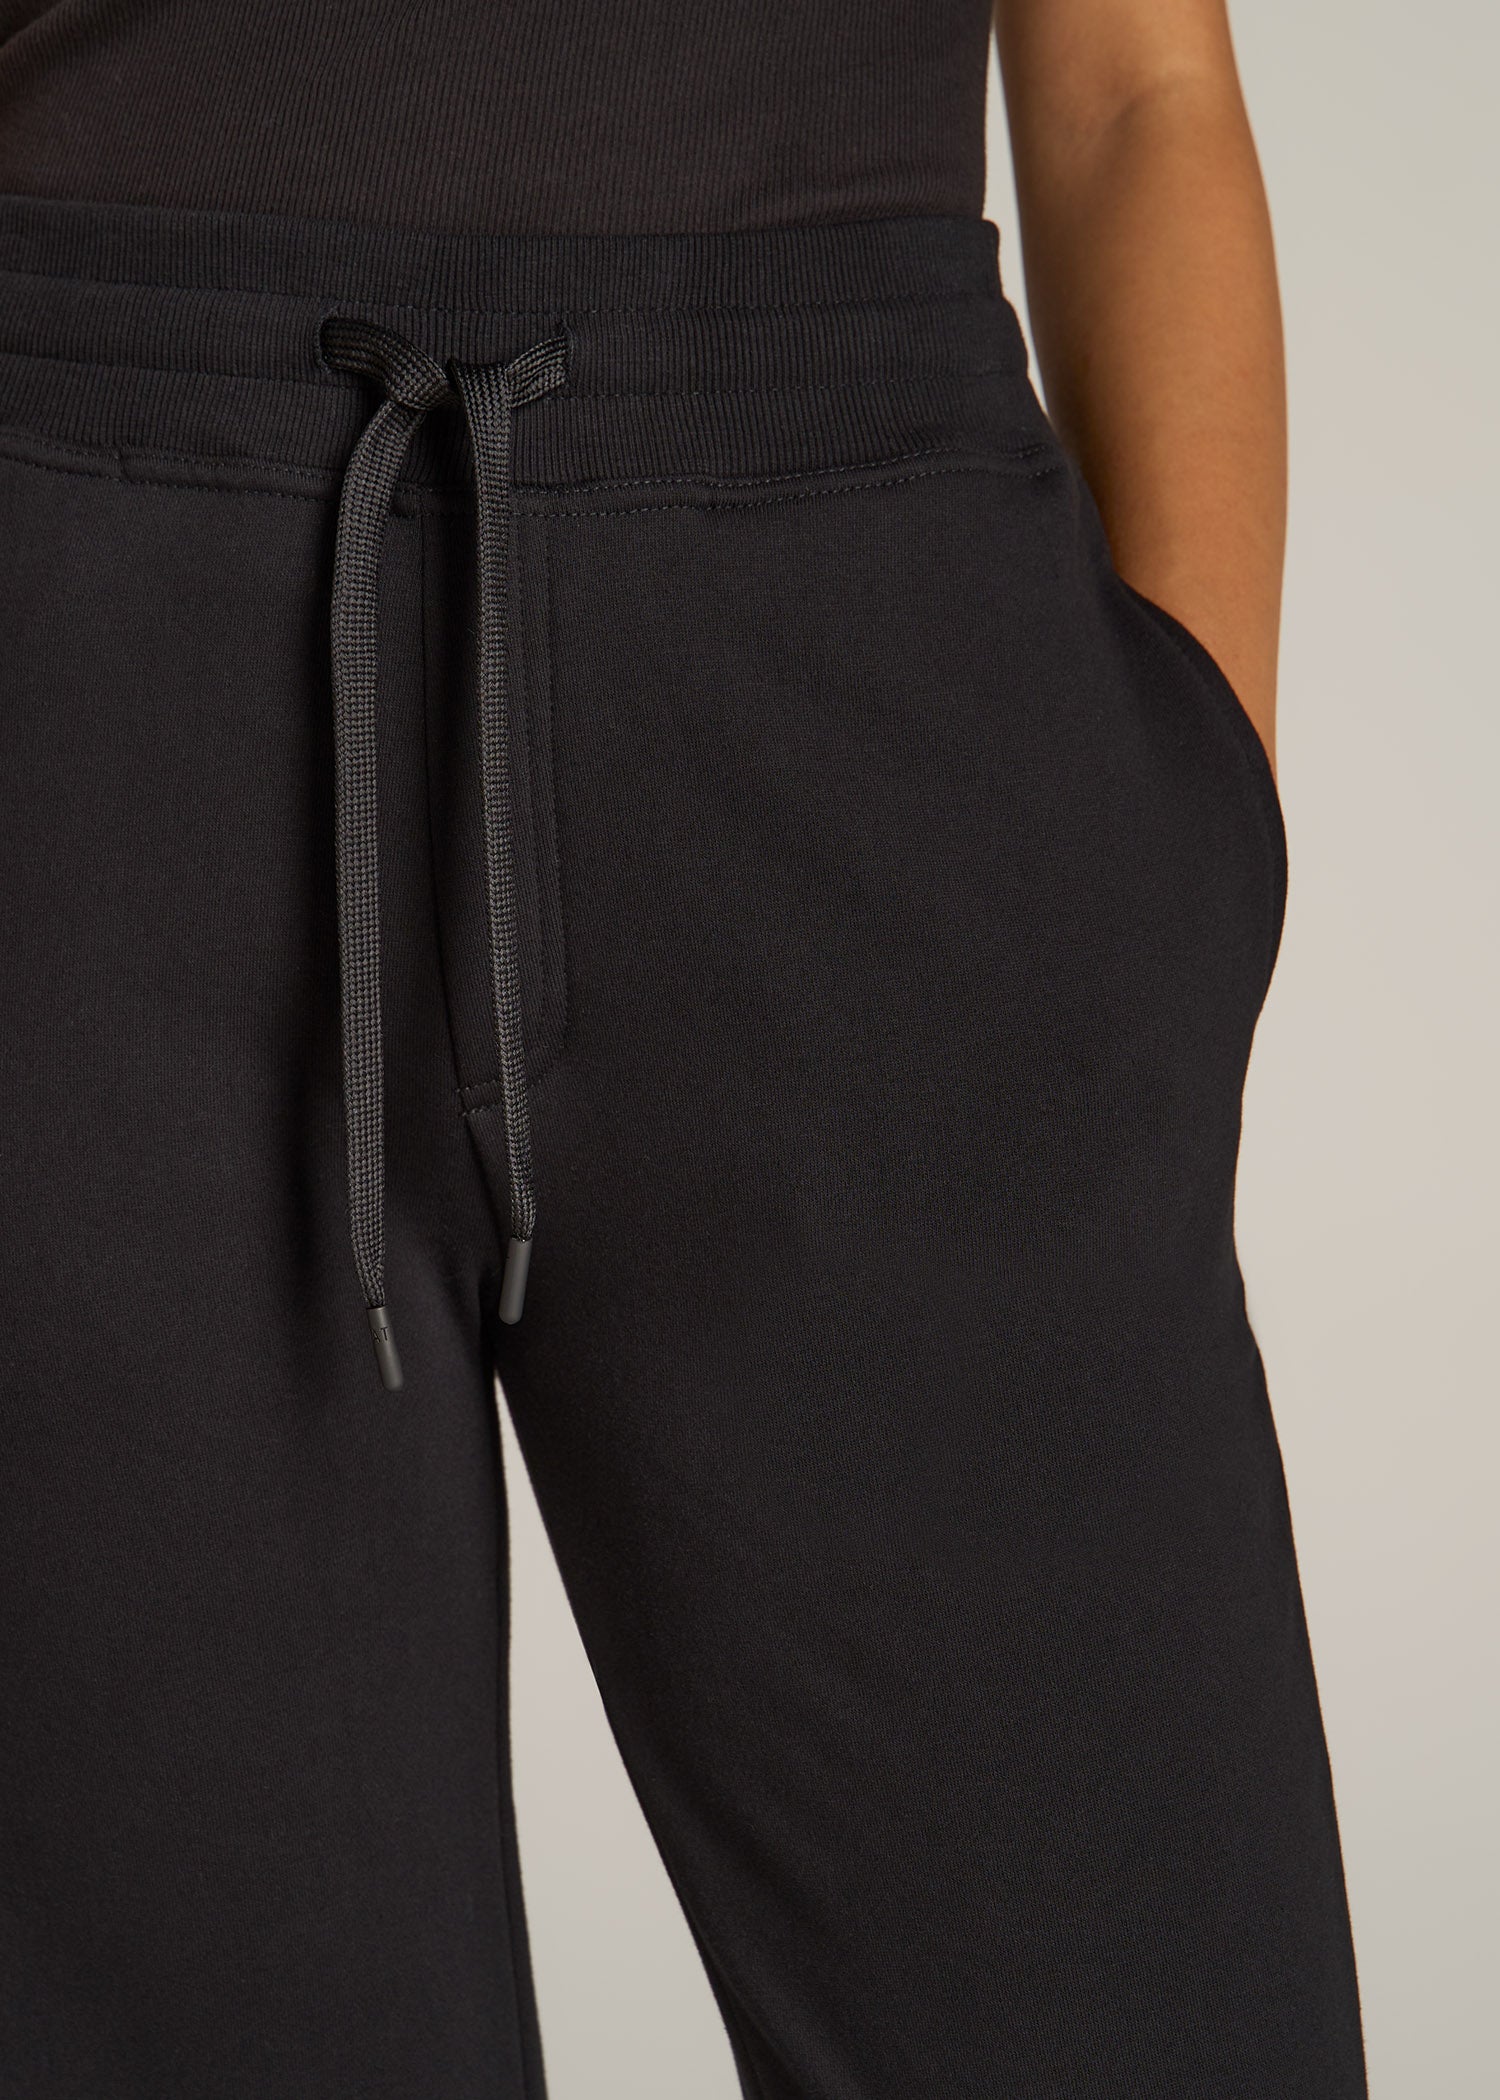 Wearever Fleece Regular Fit Women's Tall Sweatpants in Vintage Black